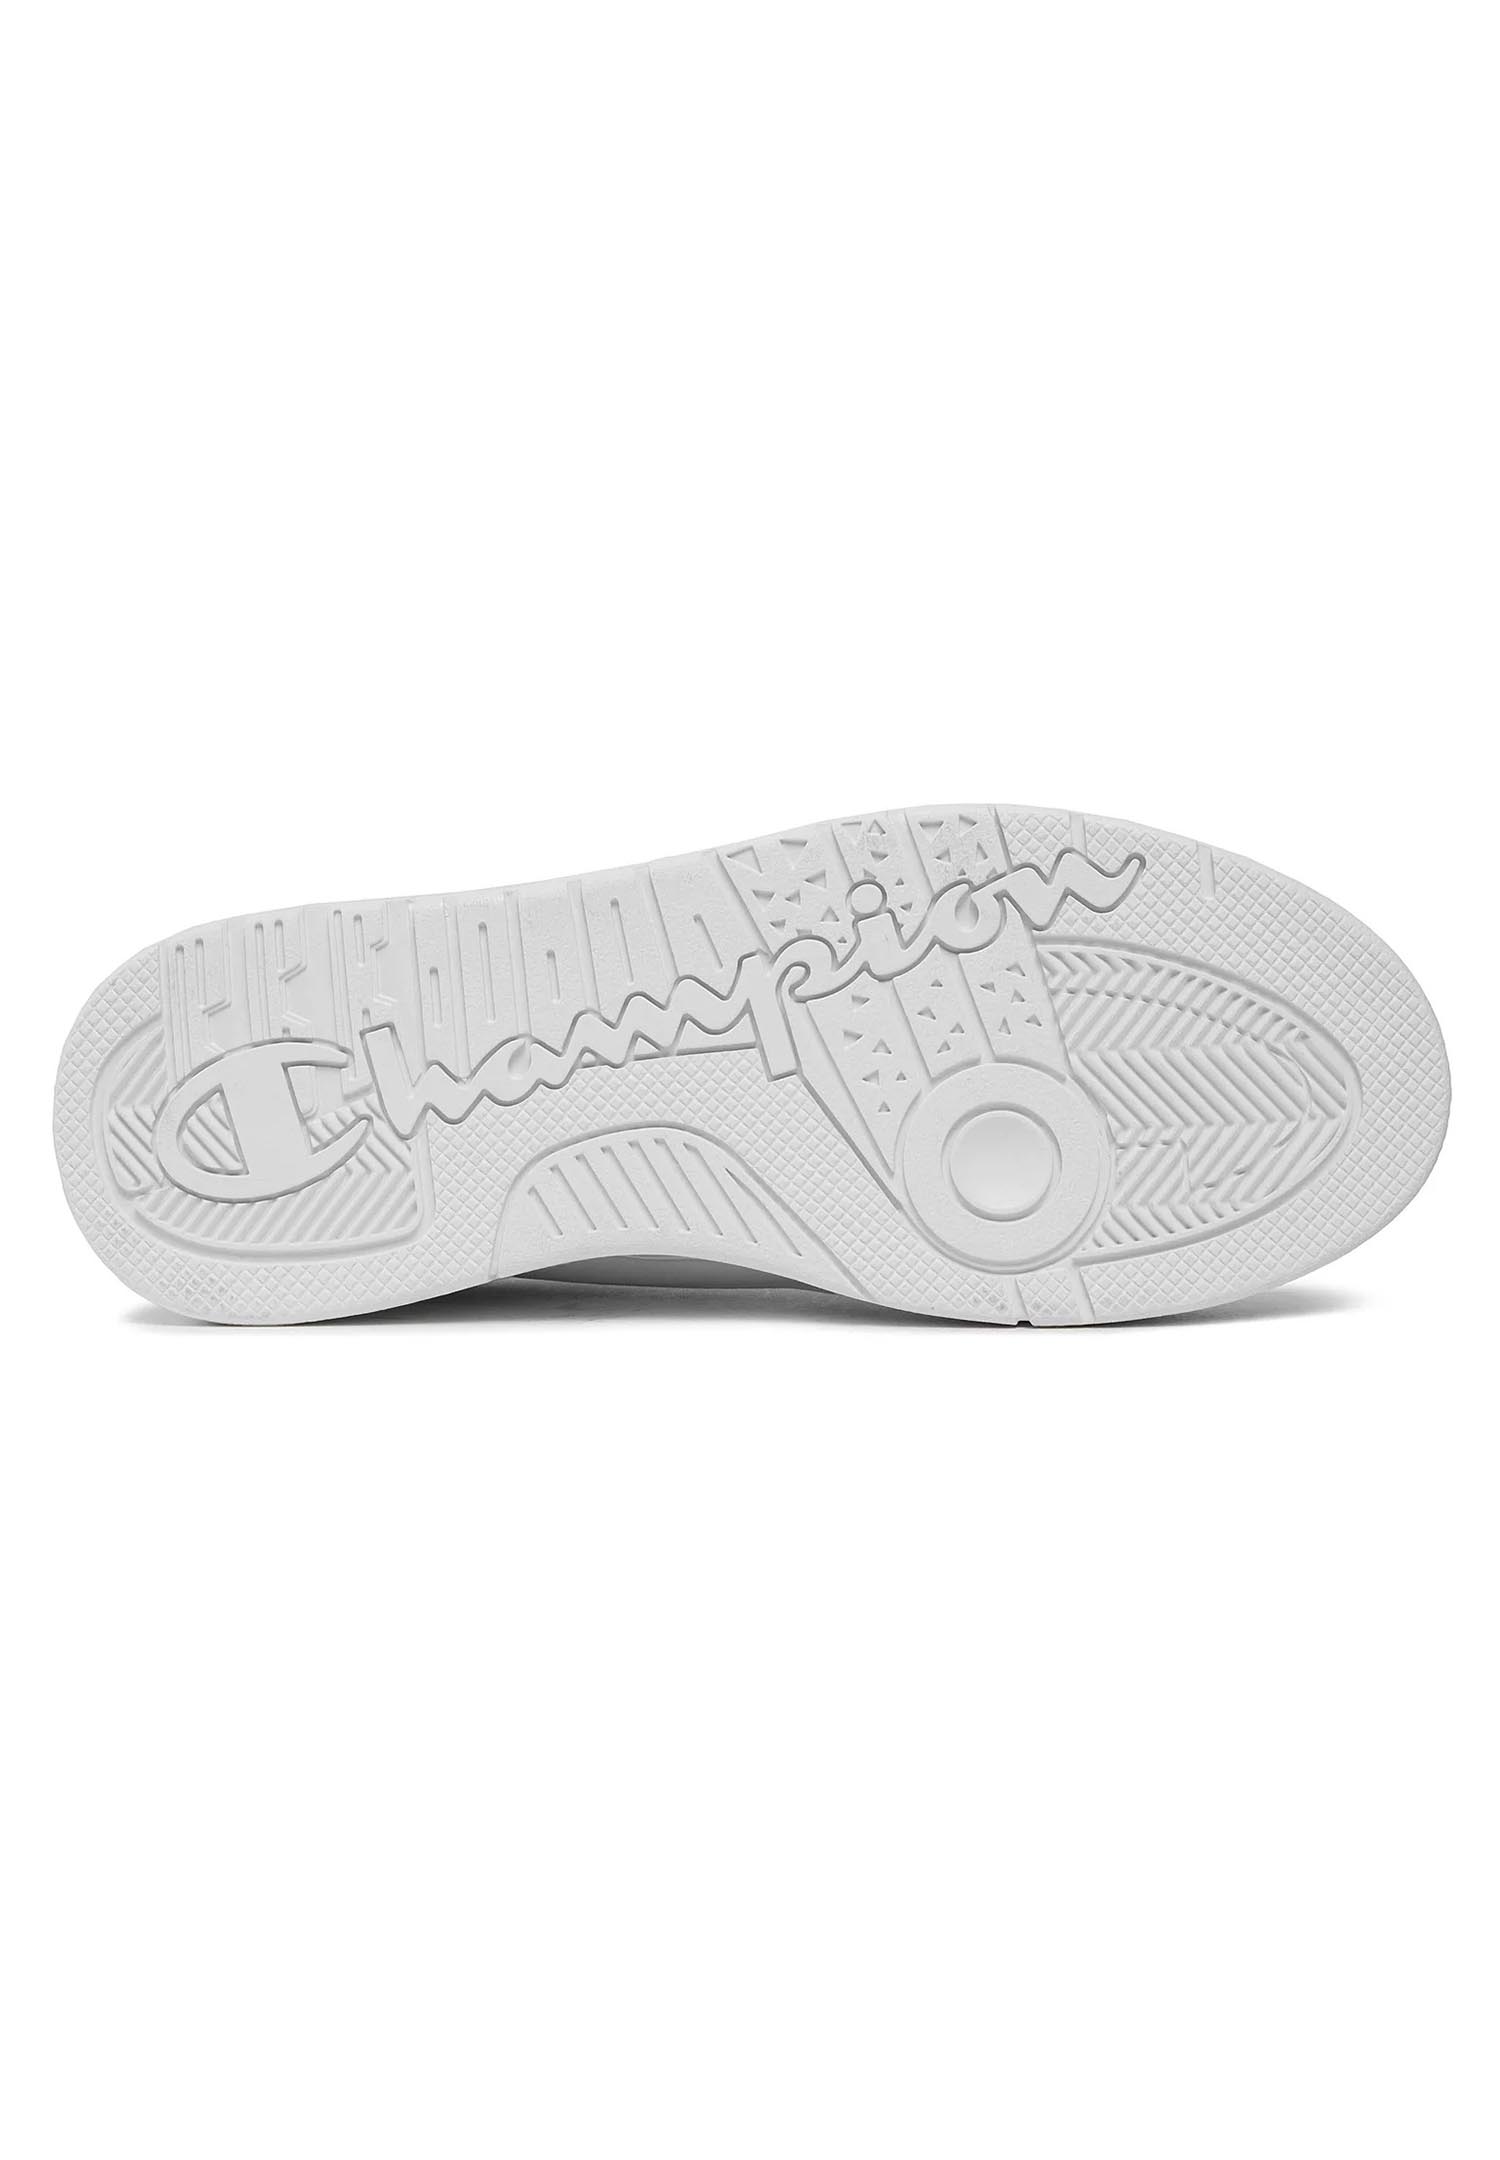 Champion REBOUND HERITAGE LOW Herren Sneaker S22030-CHA-WW010 weiß  